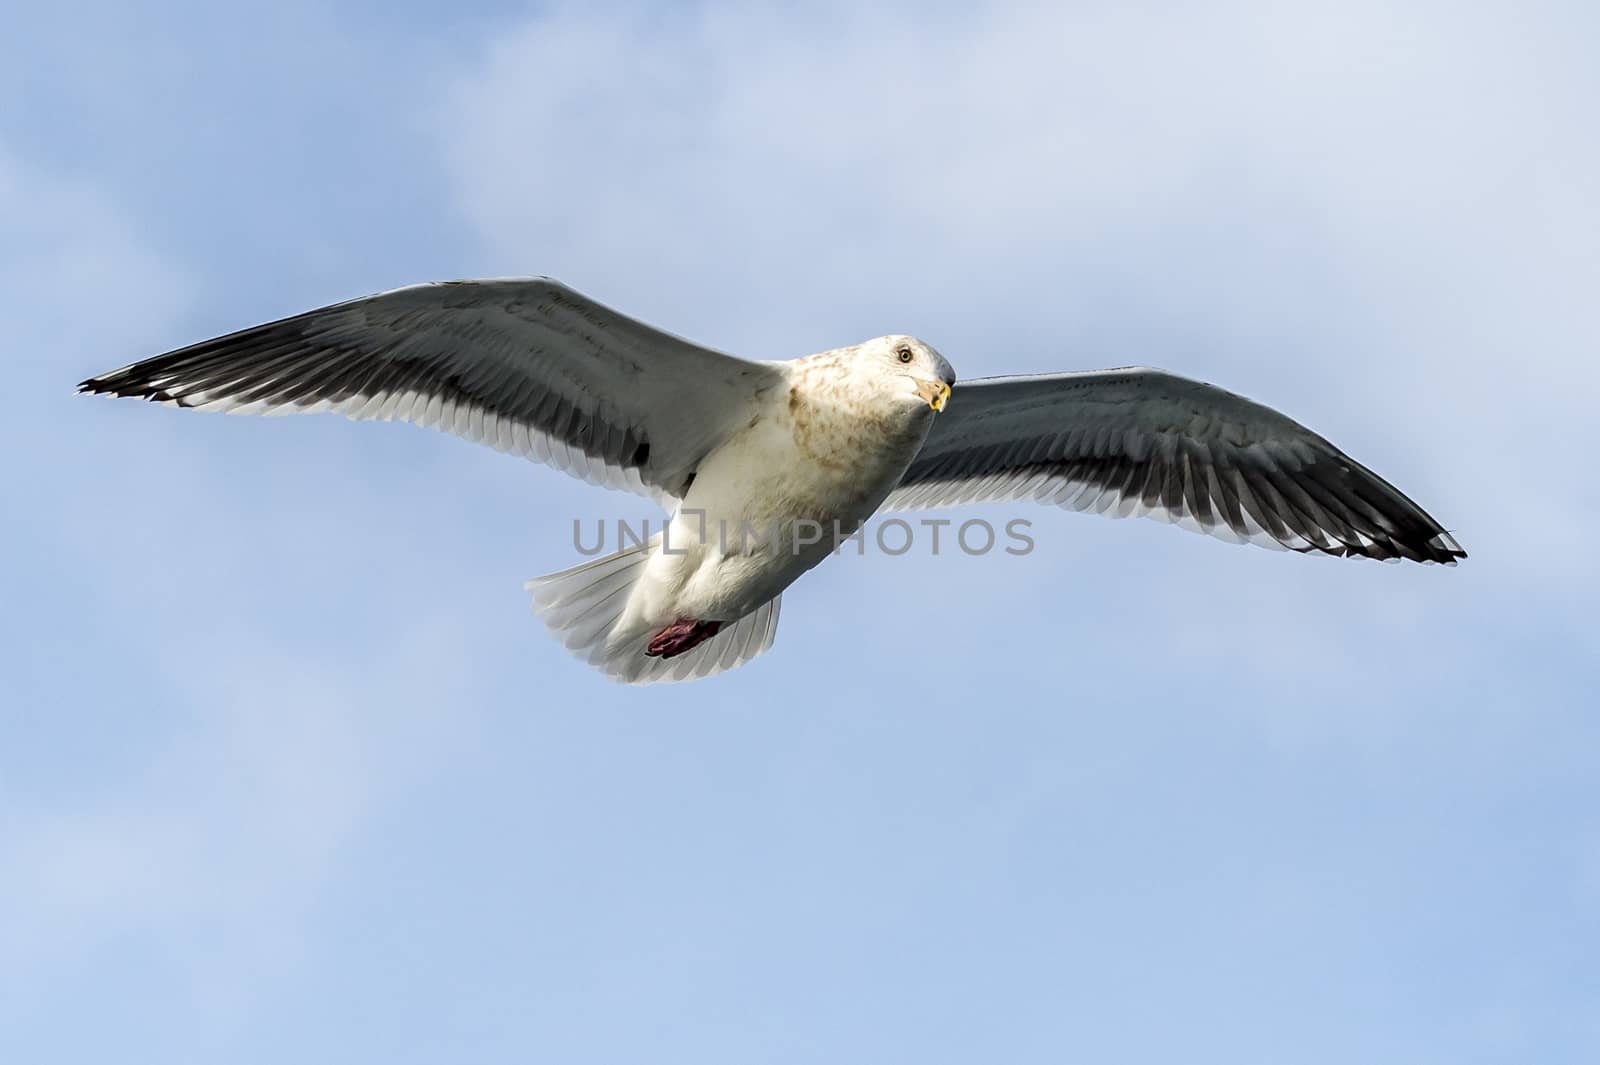 Flying Predatory Seagulls by JasonYU